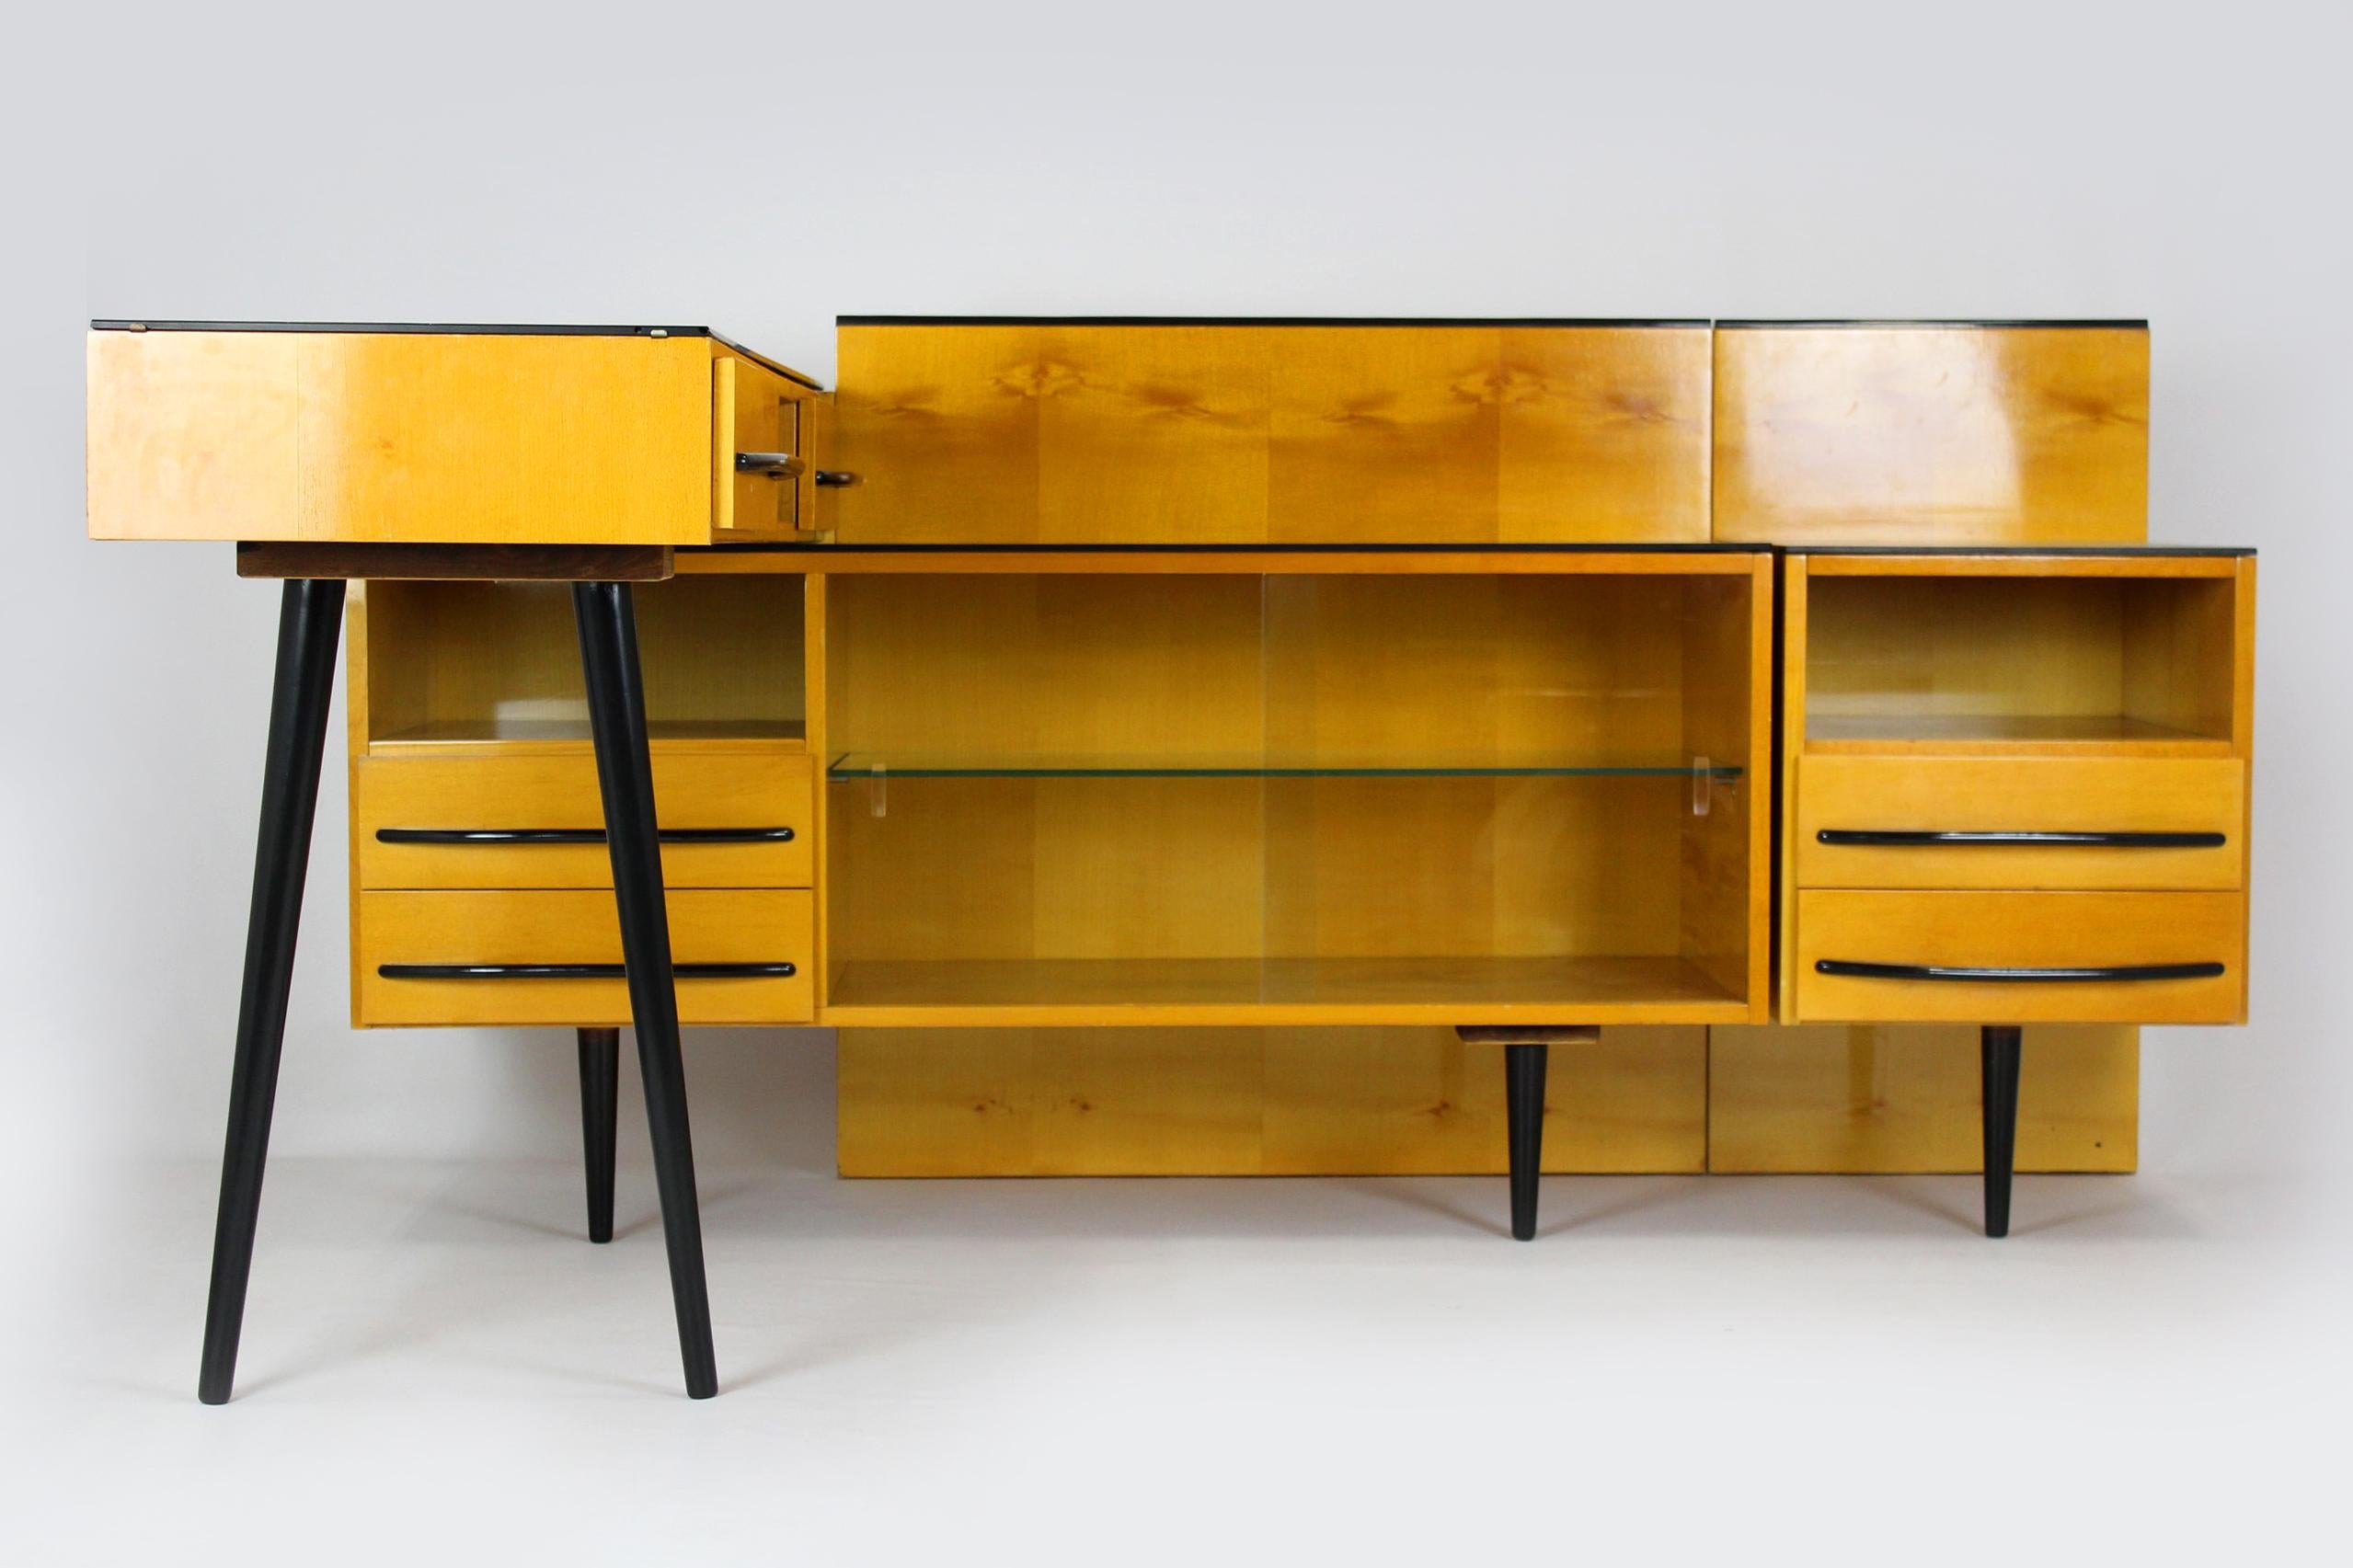 Dieses Vintage-Möbelset wurde von Mojmir Pozar entworfen und in den 1960er Jahren in der Tschechischen Republik hergestellt.
Die Menge besteht aus drei Elementen:
- kleinerer Schrank: 40x42x60cm
- größerer Schrank: 120x42x60cm
- Schreibtisch: